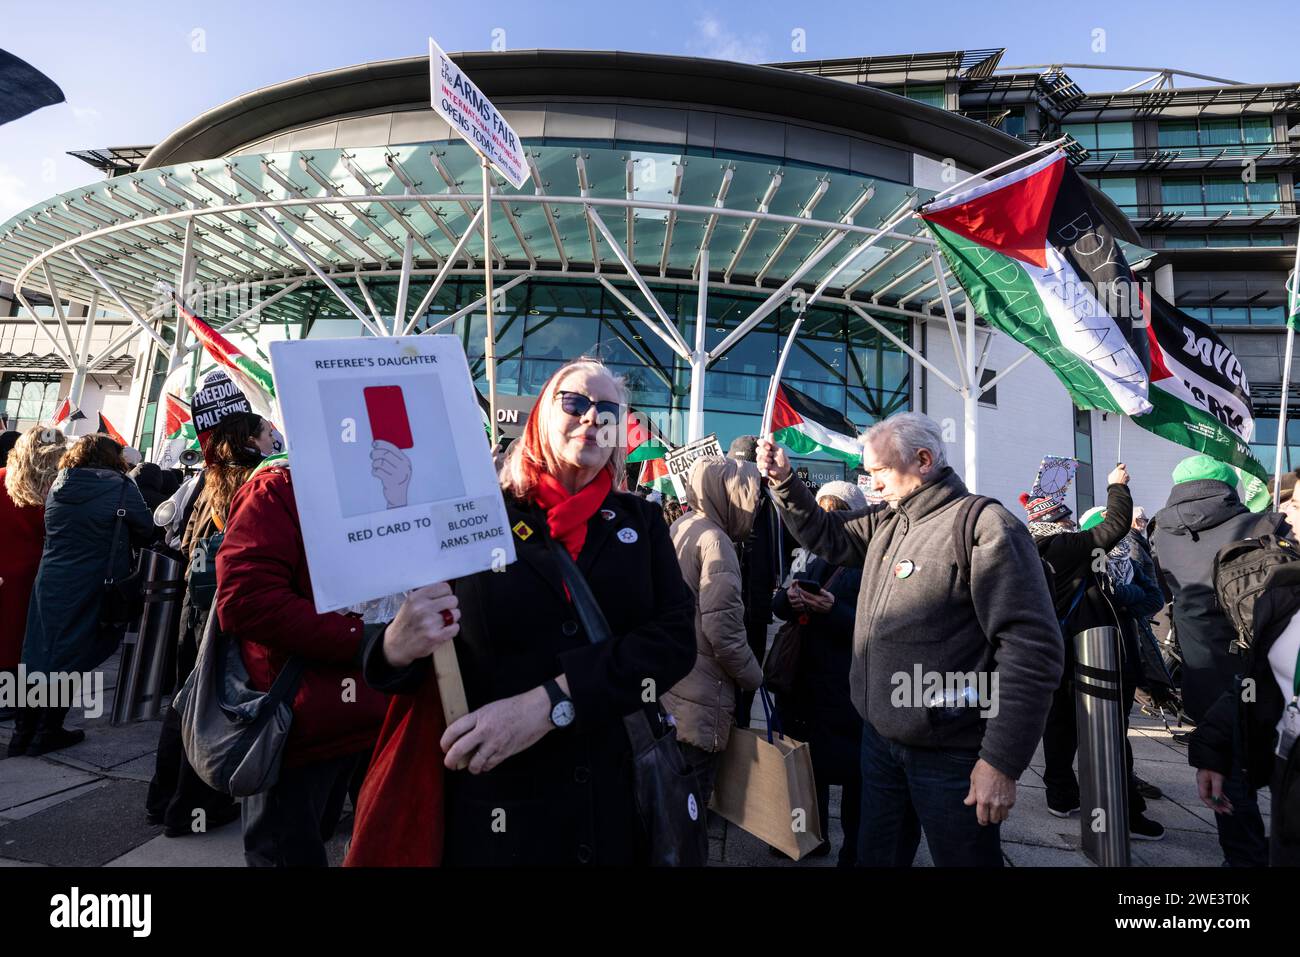 Manifestants pro-palestiniens Palestine ACTION PALESTINE prend part à une manifestation contre une exposition d'armes militaires au Twickenham Rugby Stadium, dans le sud-ouest de Londres. Banque D'Images